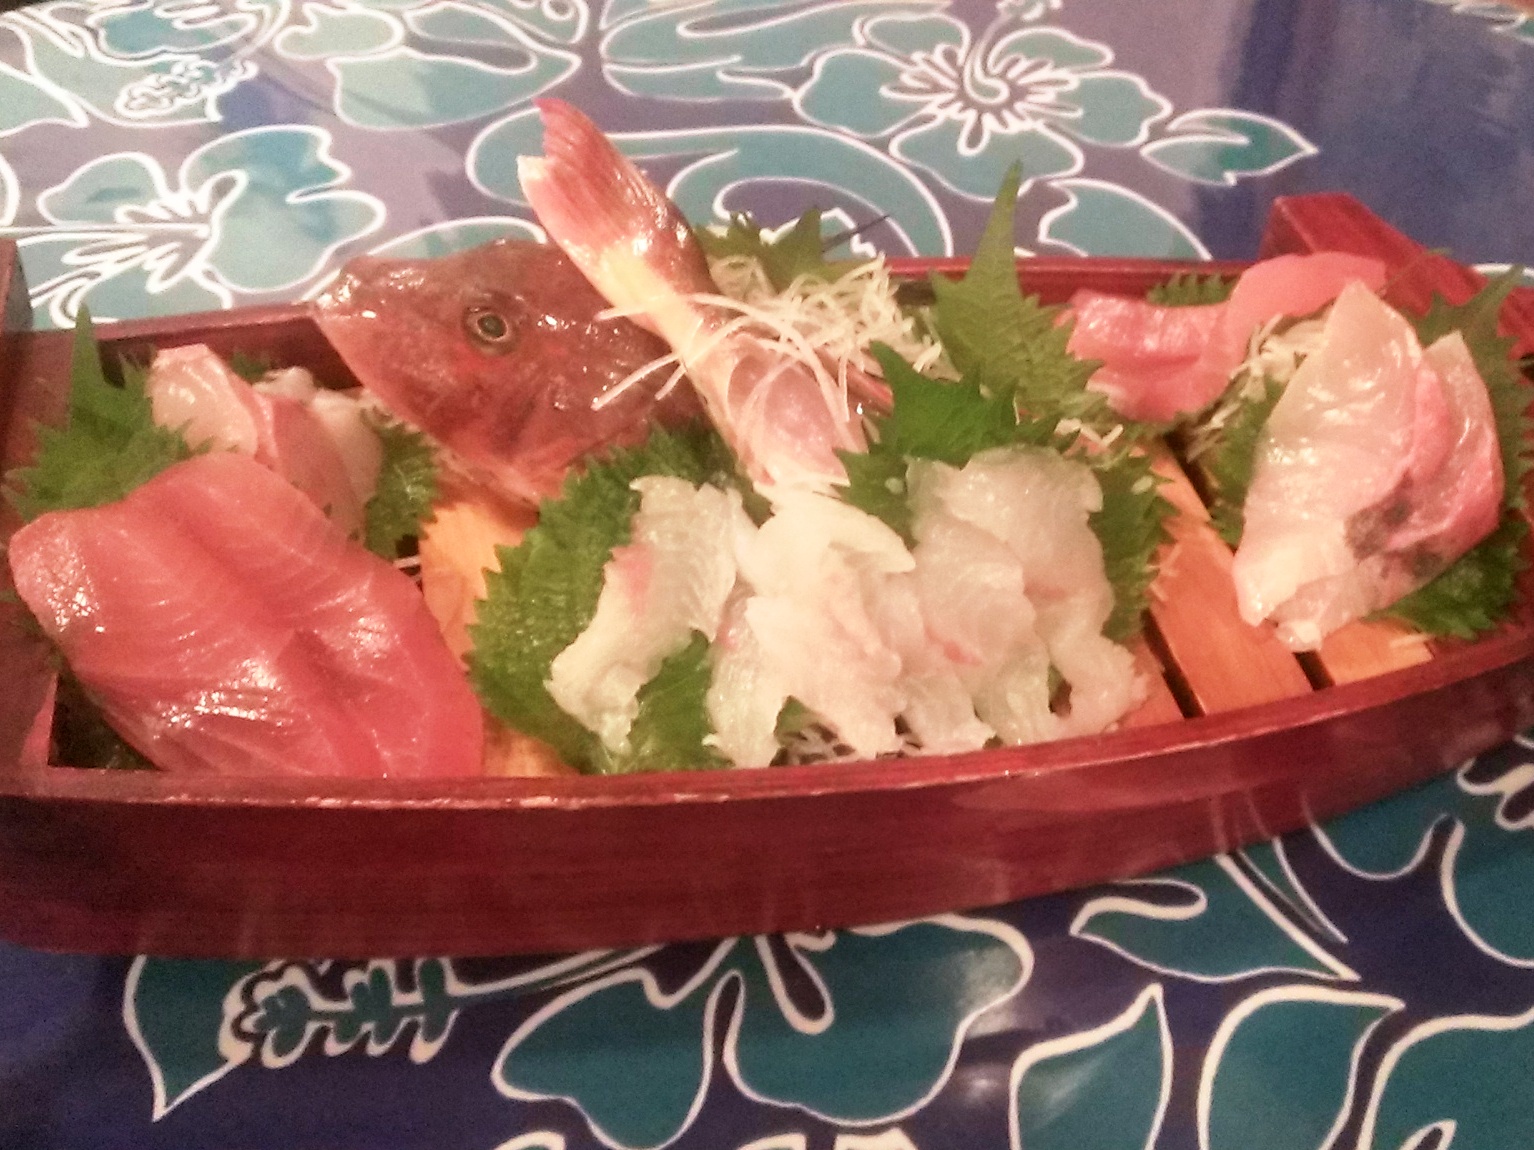 １４ある日のミニお刺身船盛りです、ご夕食はメインは熱々お肉グリル料理＋季節の色とりどりサラダ＋ミニ船盛り.jpg